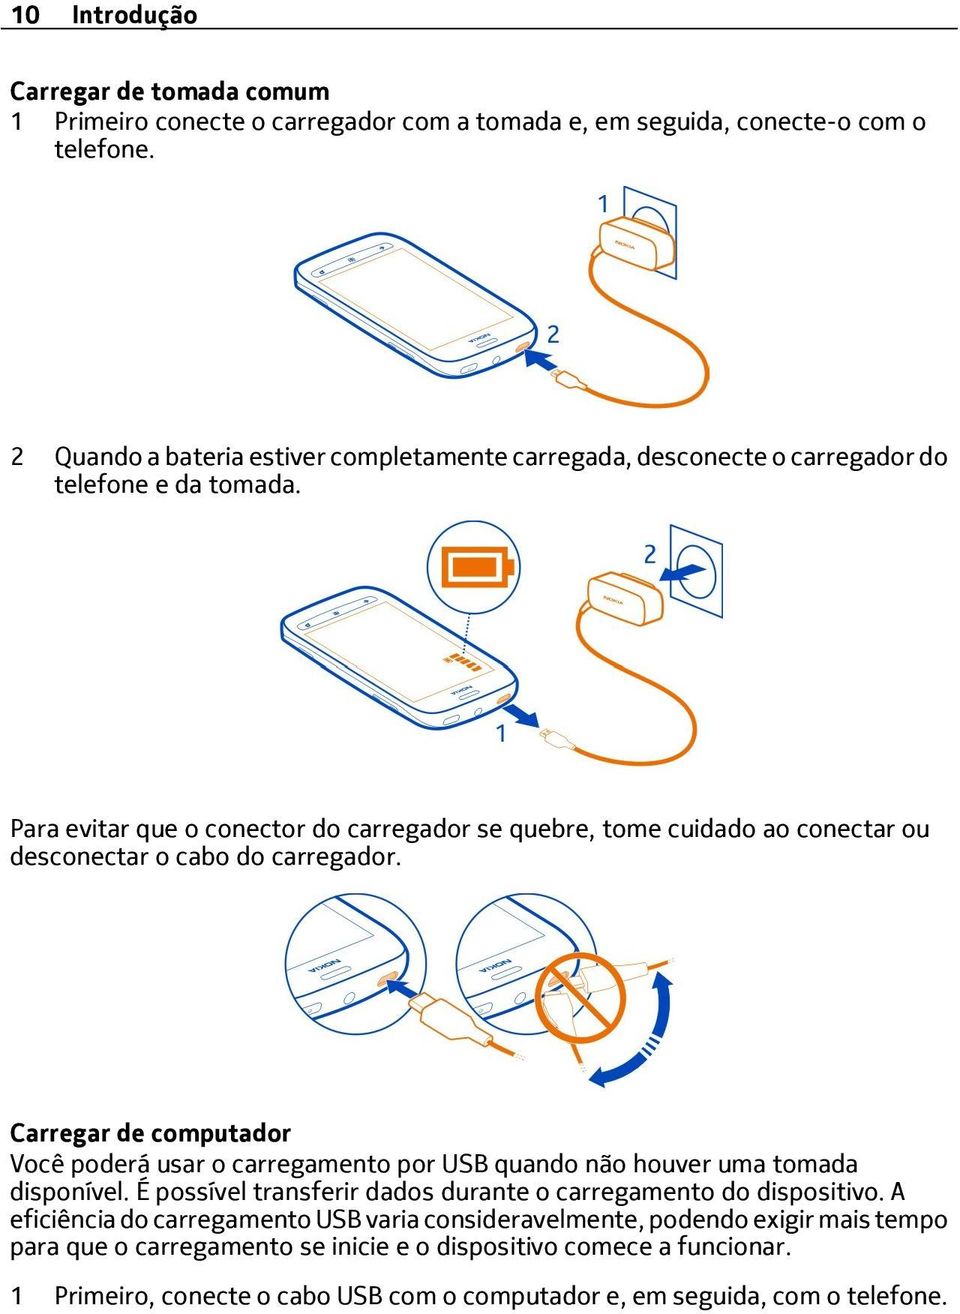 Para evitar que o conector do carregador se quebre, tome cuidado ao conectar ou desconectar o cabo do carregador.